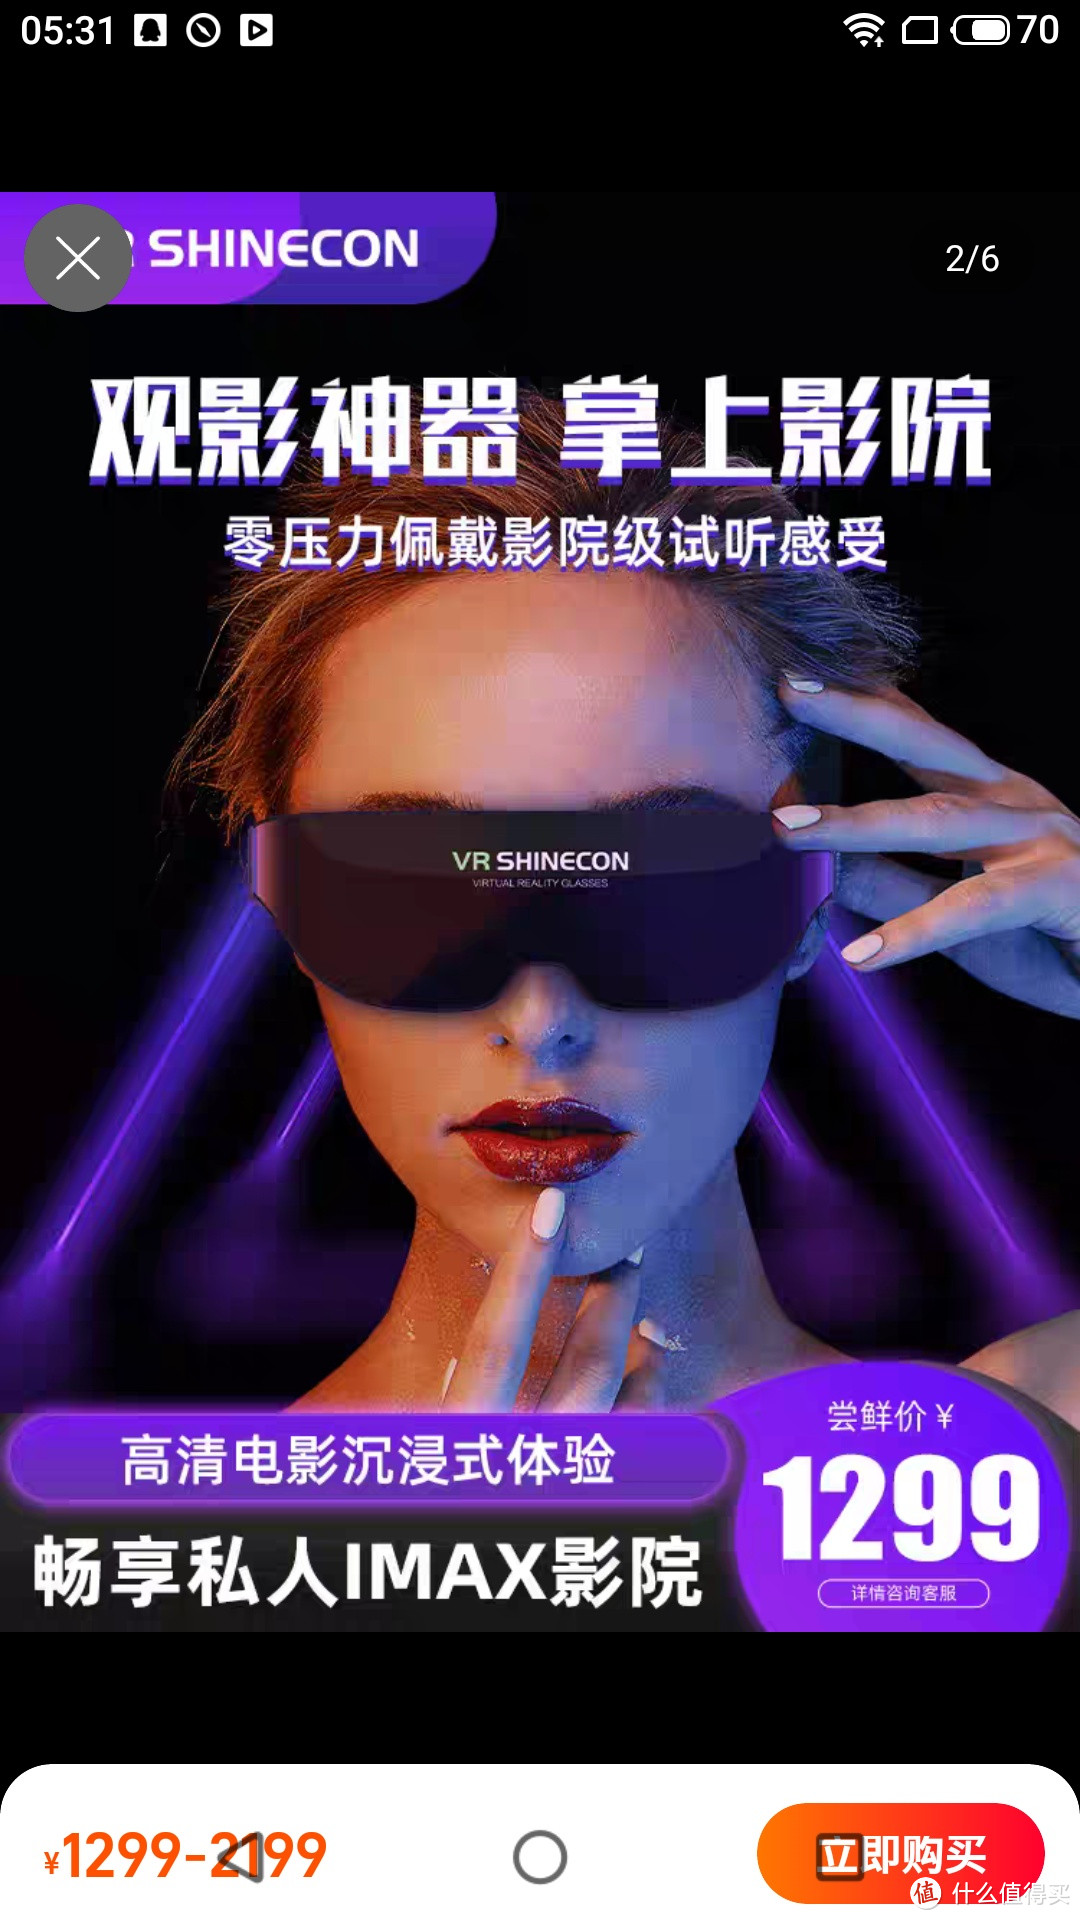 4k一体机vr眼镜3d智能ar头戴显示器大屏影院体感游戏机虚拟用品手机专用性视频看电影神器vr眼睛虚拟现实